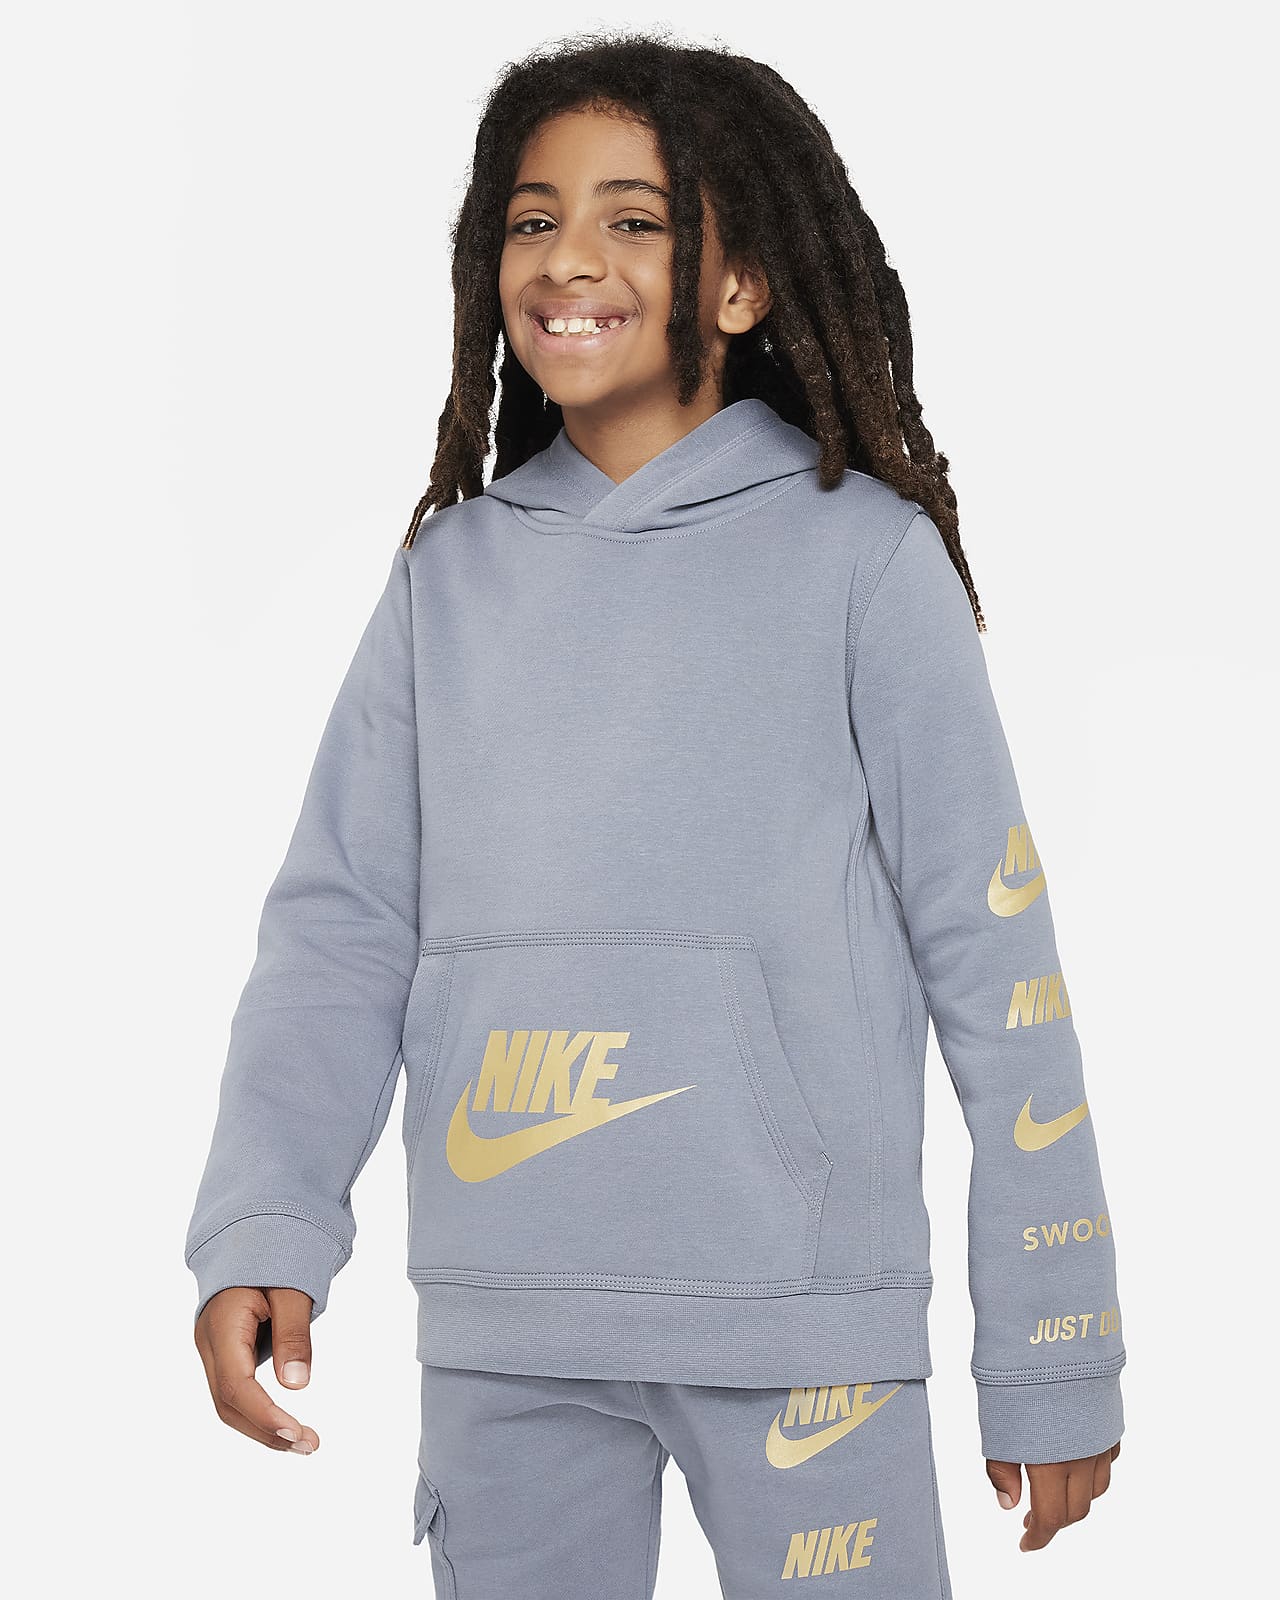 Nike Sportswear Kids\' Older Hoodie. LU Nike Standard Pullover Fleece Issue